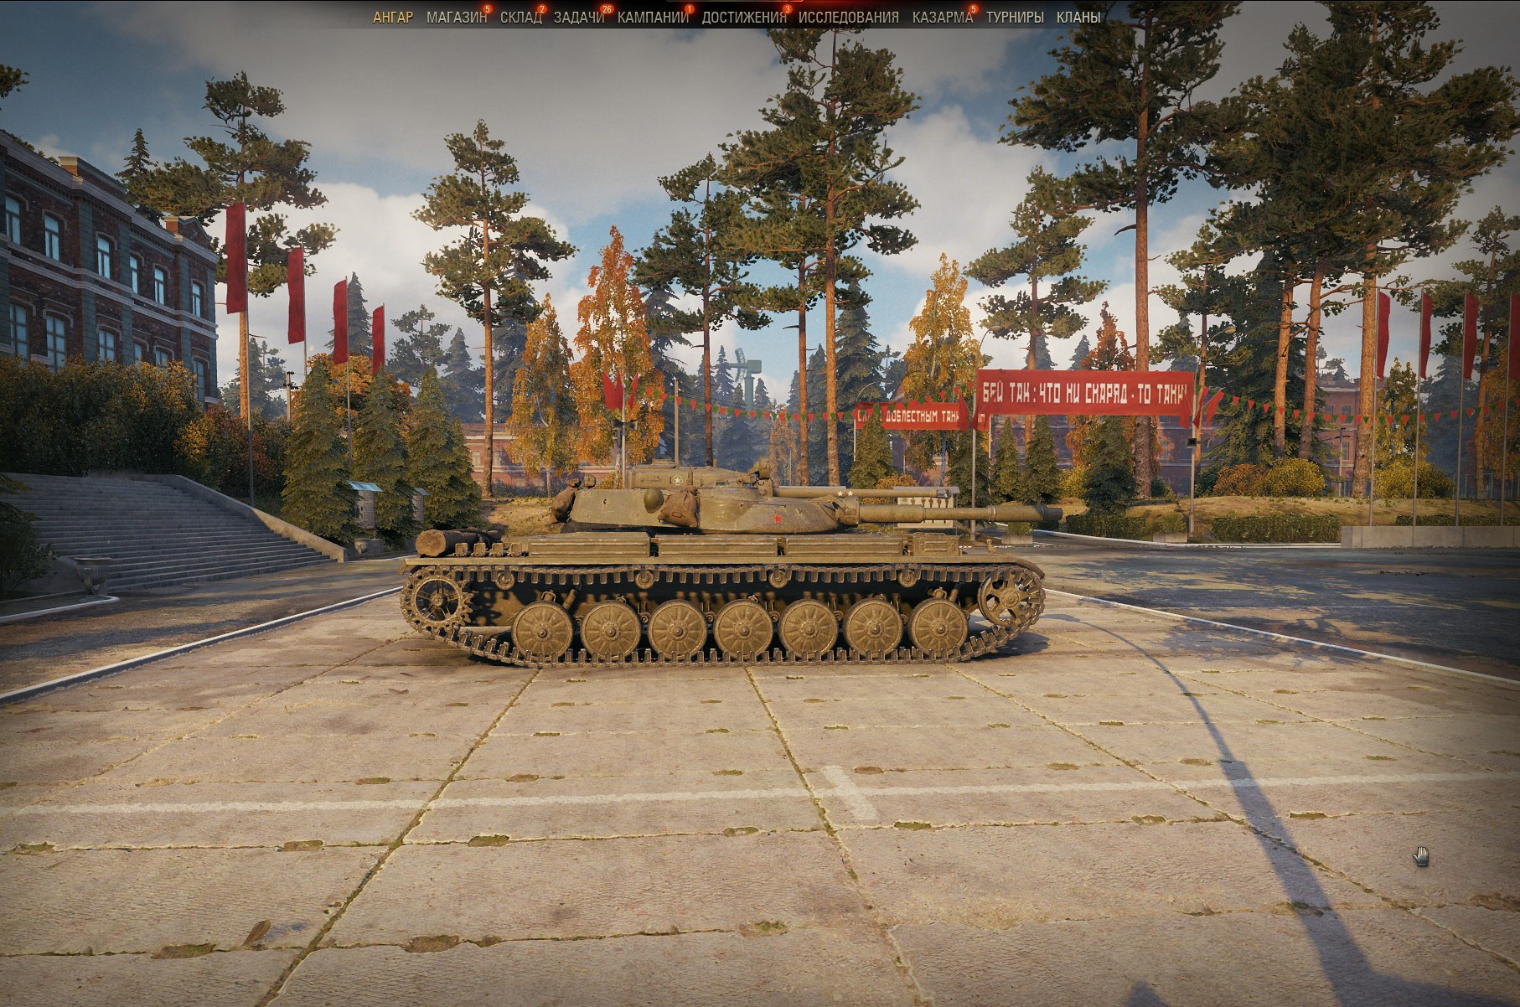 Т⁠-⁠100 ЛТ — очень быстрый и динамичный советский легкий танк с великолепной маскировкой и комфортным орудием. Пожалуй, самый универсальный легкий танк в игре